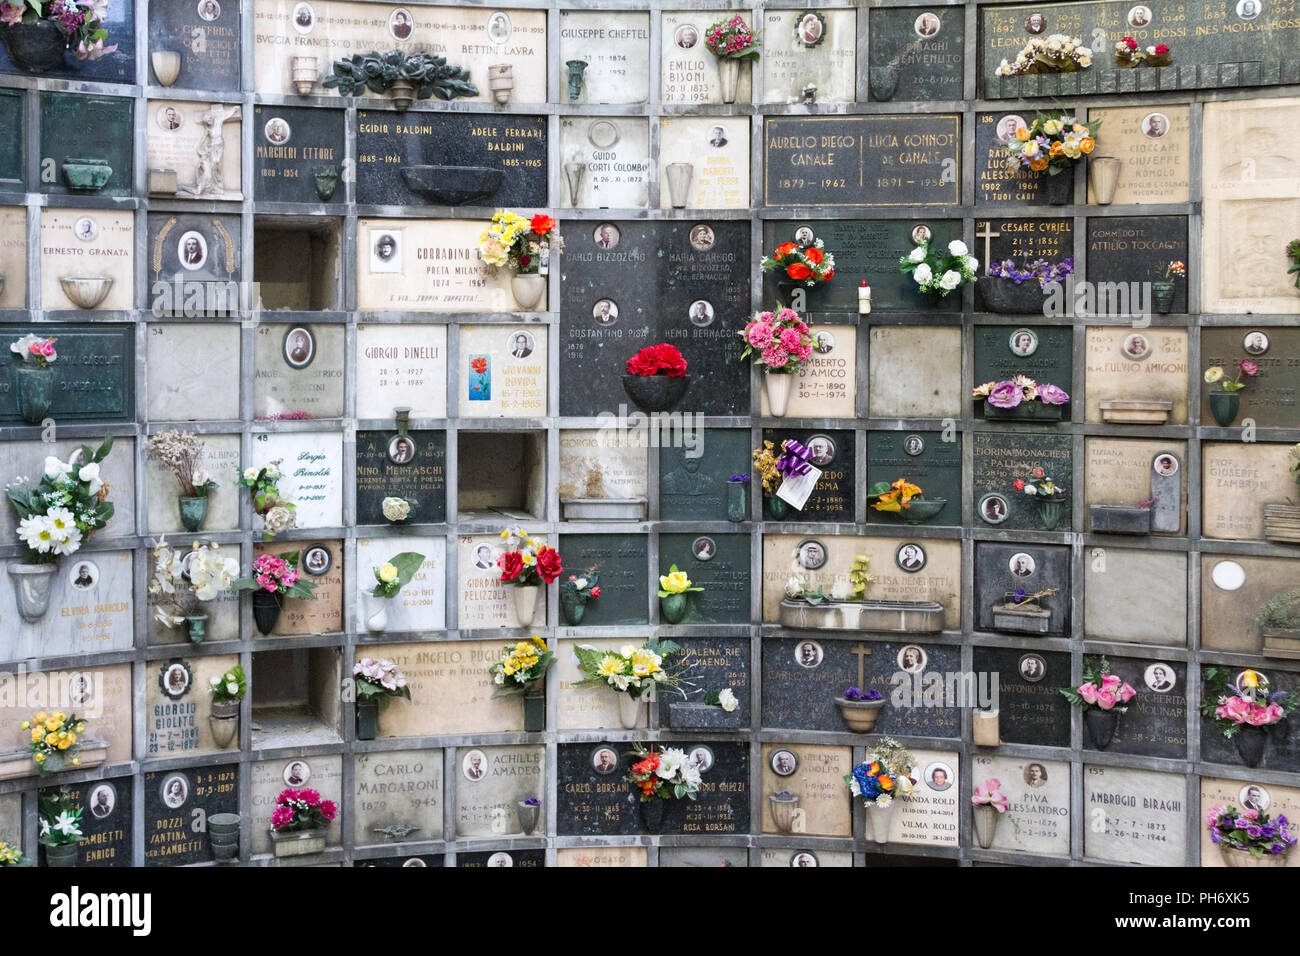 Milano, Italie. 2018/2/8. Un columbarium avec urnes cinéraire (avec des cendres humaines) au Cimitero Monumentale ('Monumental' cimetière) à Milan, Italie. Banque D'Images